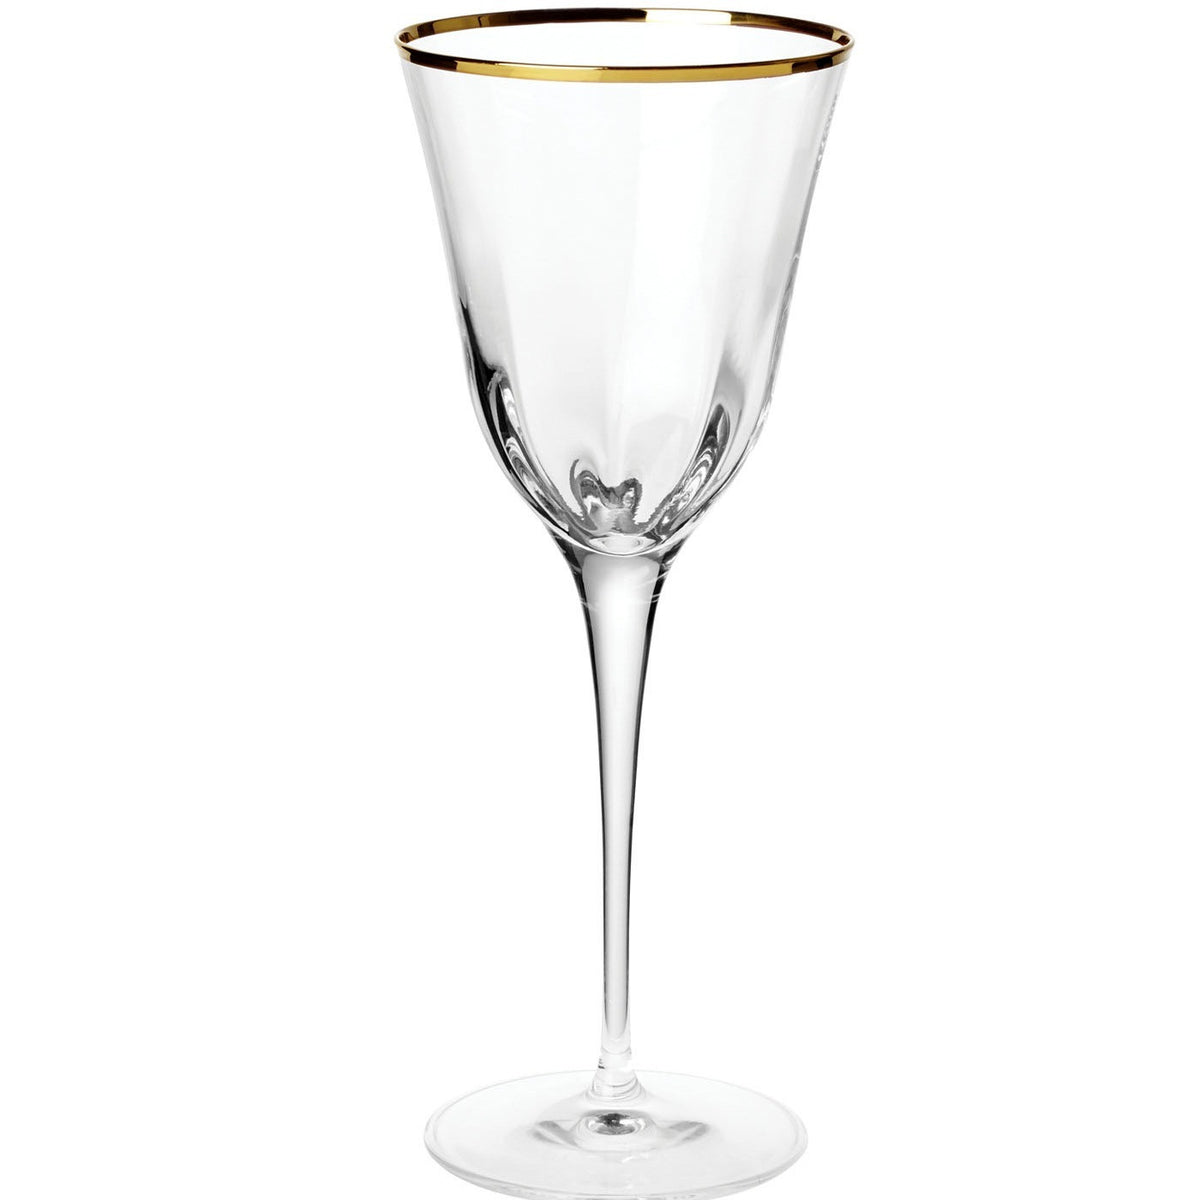 VIETRI: Optical Gold Wine - Artistica.com